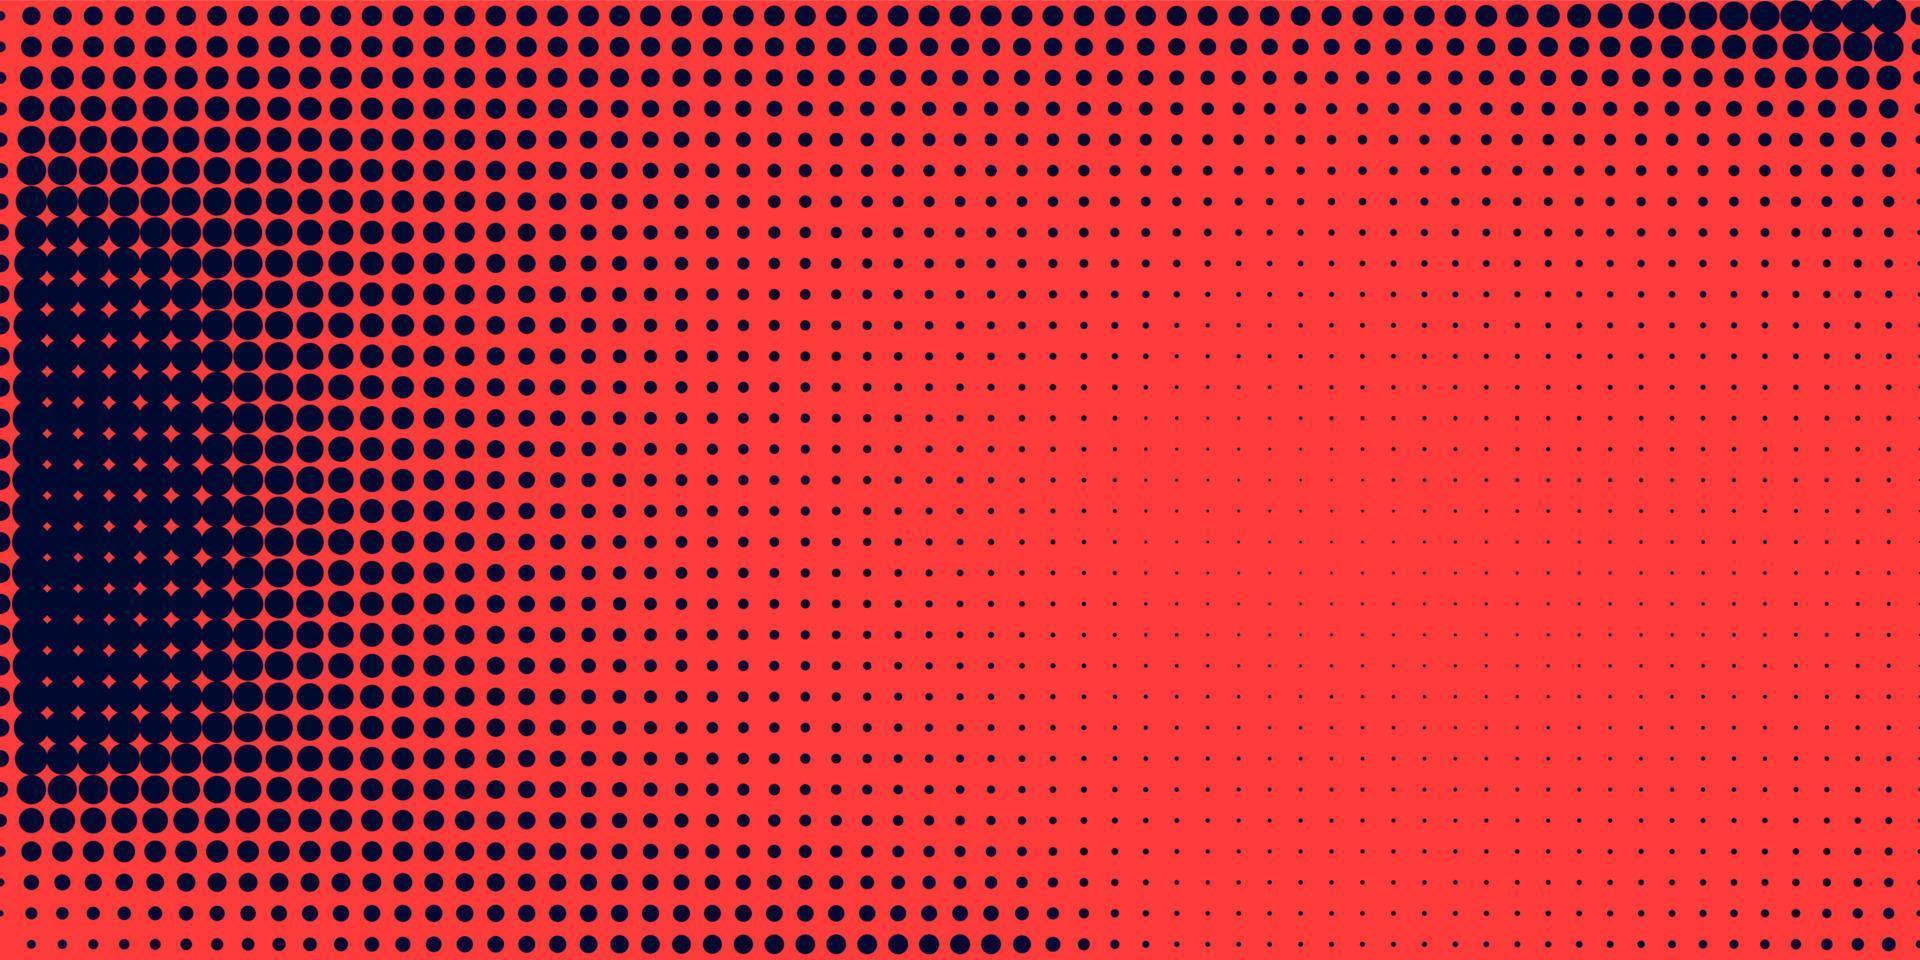 meio-tom em estilo abstrato. textura de vetor geométrico banner retro. impressão moderna. fundo azul escuro e vermelho. efeito de luz